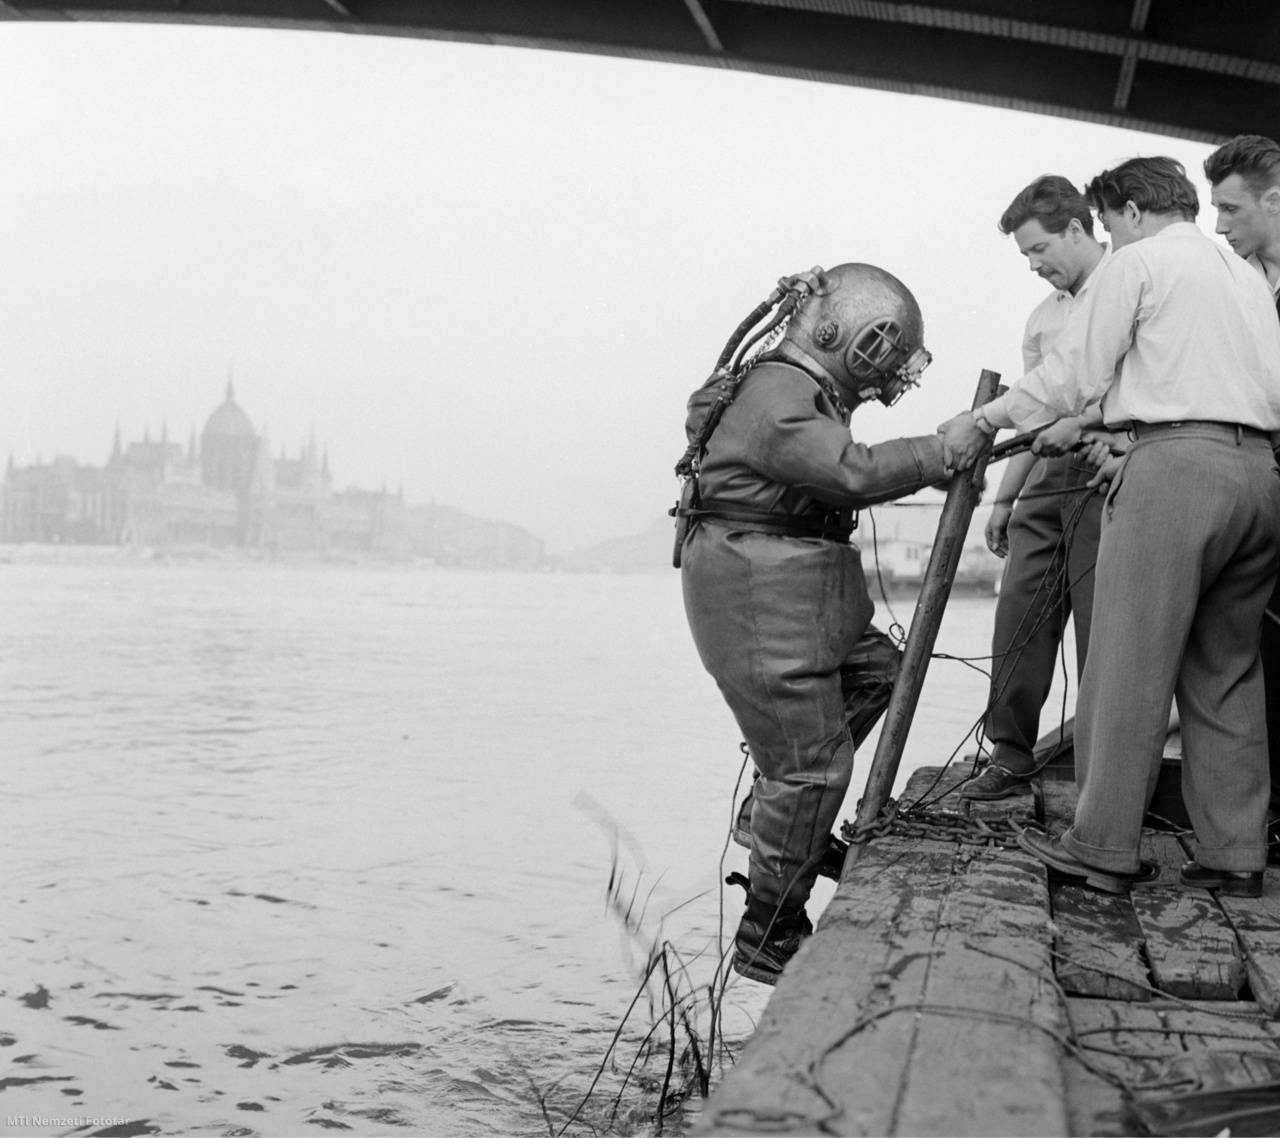 Budapest, 1960. május 24. Sólyom János MHS-nehézbúvár feljön a vízből a Margit híd háborúból visszamaradt roncsainak kutatása során. A kiemelt fémrészek értékesítéséből származó összeget a szakosztályok fejlesztésére fordítják. Az eredeti felvétel készítője ismeretlen. A Margit híd felrobbantása: a második világháború során aláaknázták a hidat. A robbanás 1944. november 4-én következett be. A Margit híd épségben maradt részeit, a szárnyhidat kivéve – melyet nem sikerült felrobbantani – 1945. január 18-án pusztították el visszavonuló német csapatok. Csupán a híd pillérei maradtak meg. 1947 és 1948 között került sor az újjáépítésre. A teljesen elkészült hidat 1948. augusztus 1-jén adták át a forgalomnak